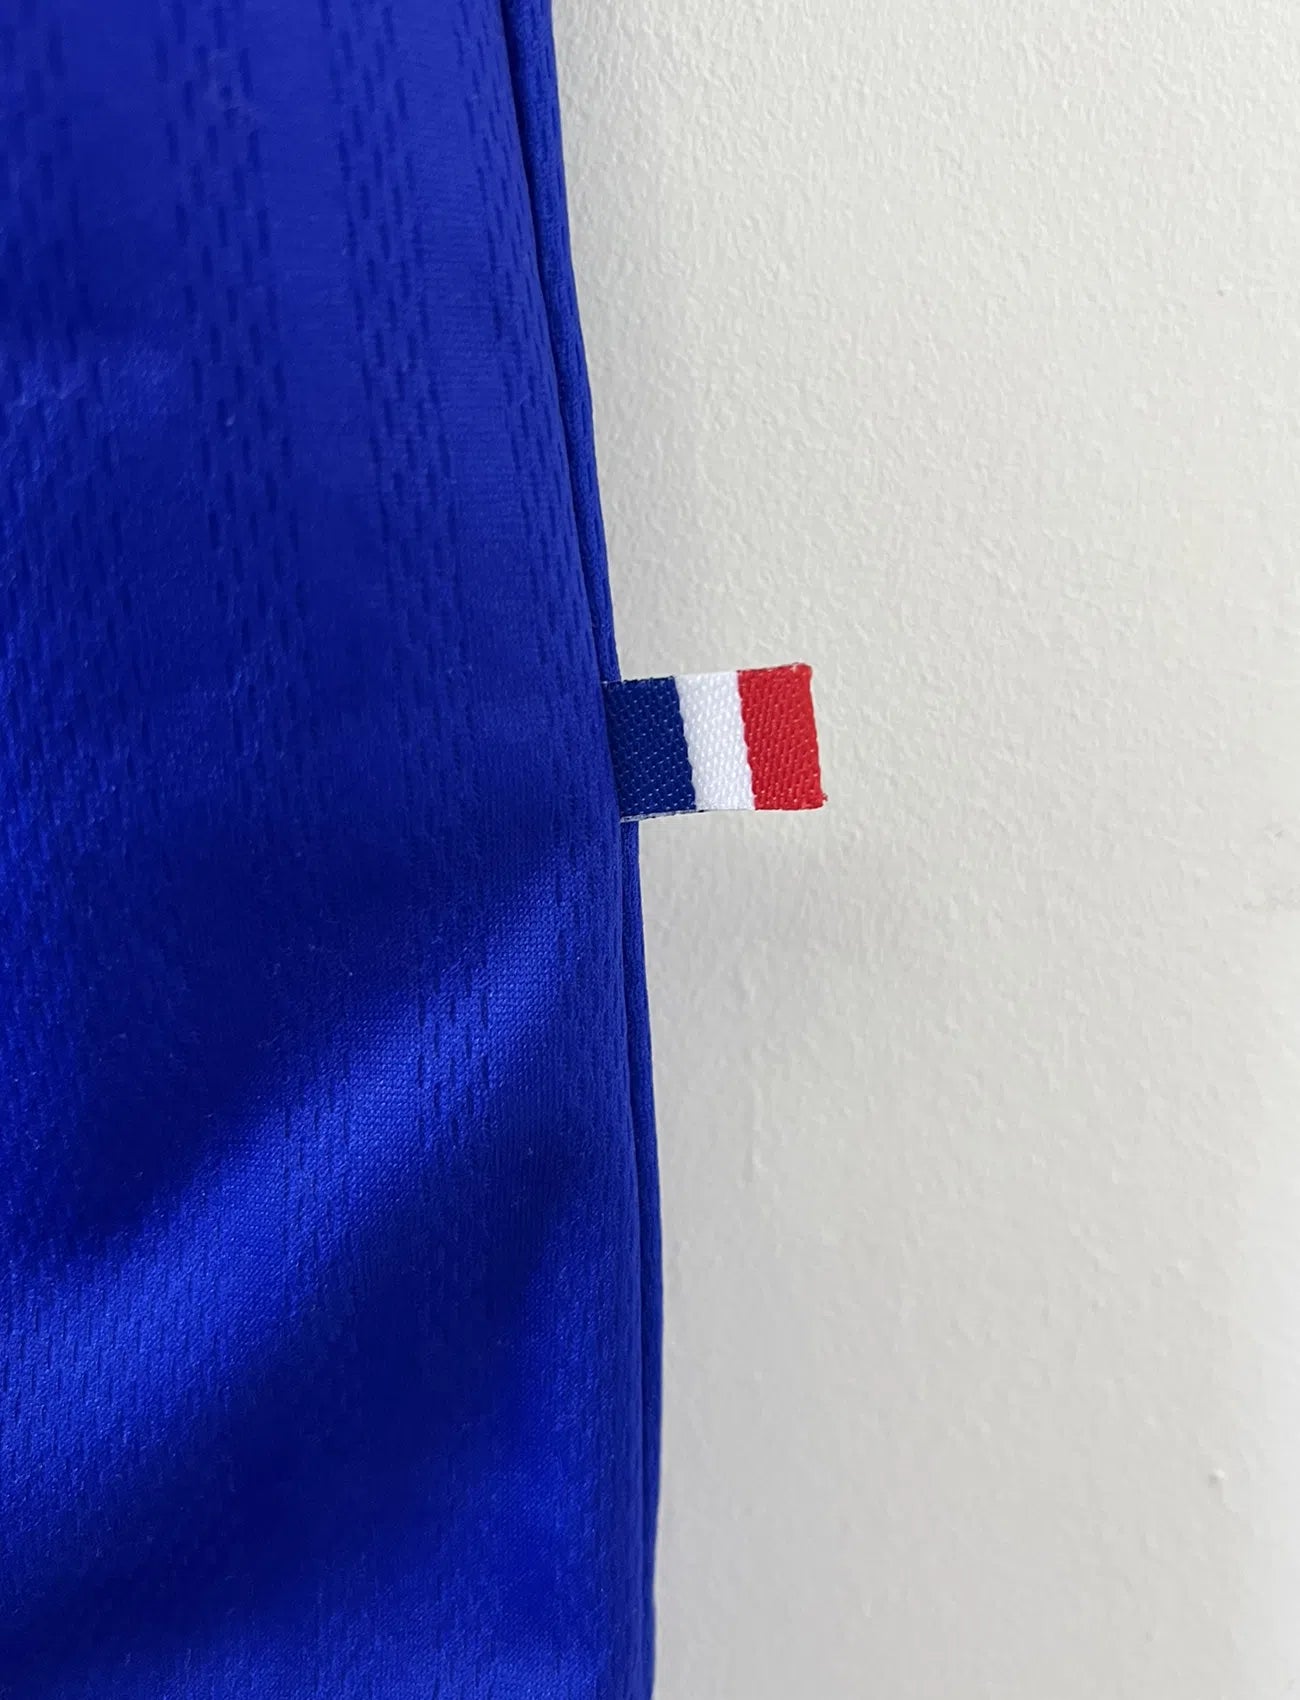 Maillot de foot vintage de l'équipe de france 98 bleu blanc et rouge. On peut retrouver l'équipementier adidas et le coq avec l'étoile. Il s'agit d'un maillot authentique édité lors de la coupe du monde 1998.